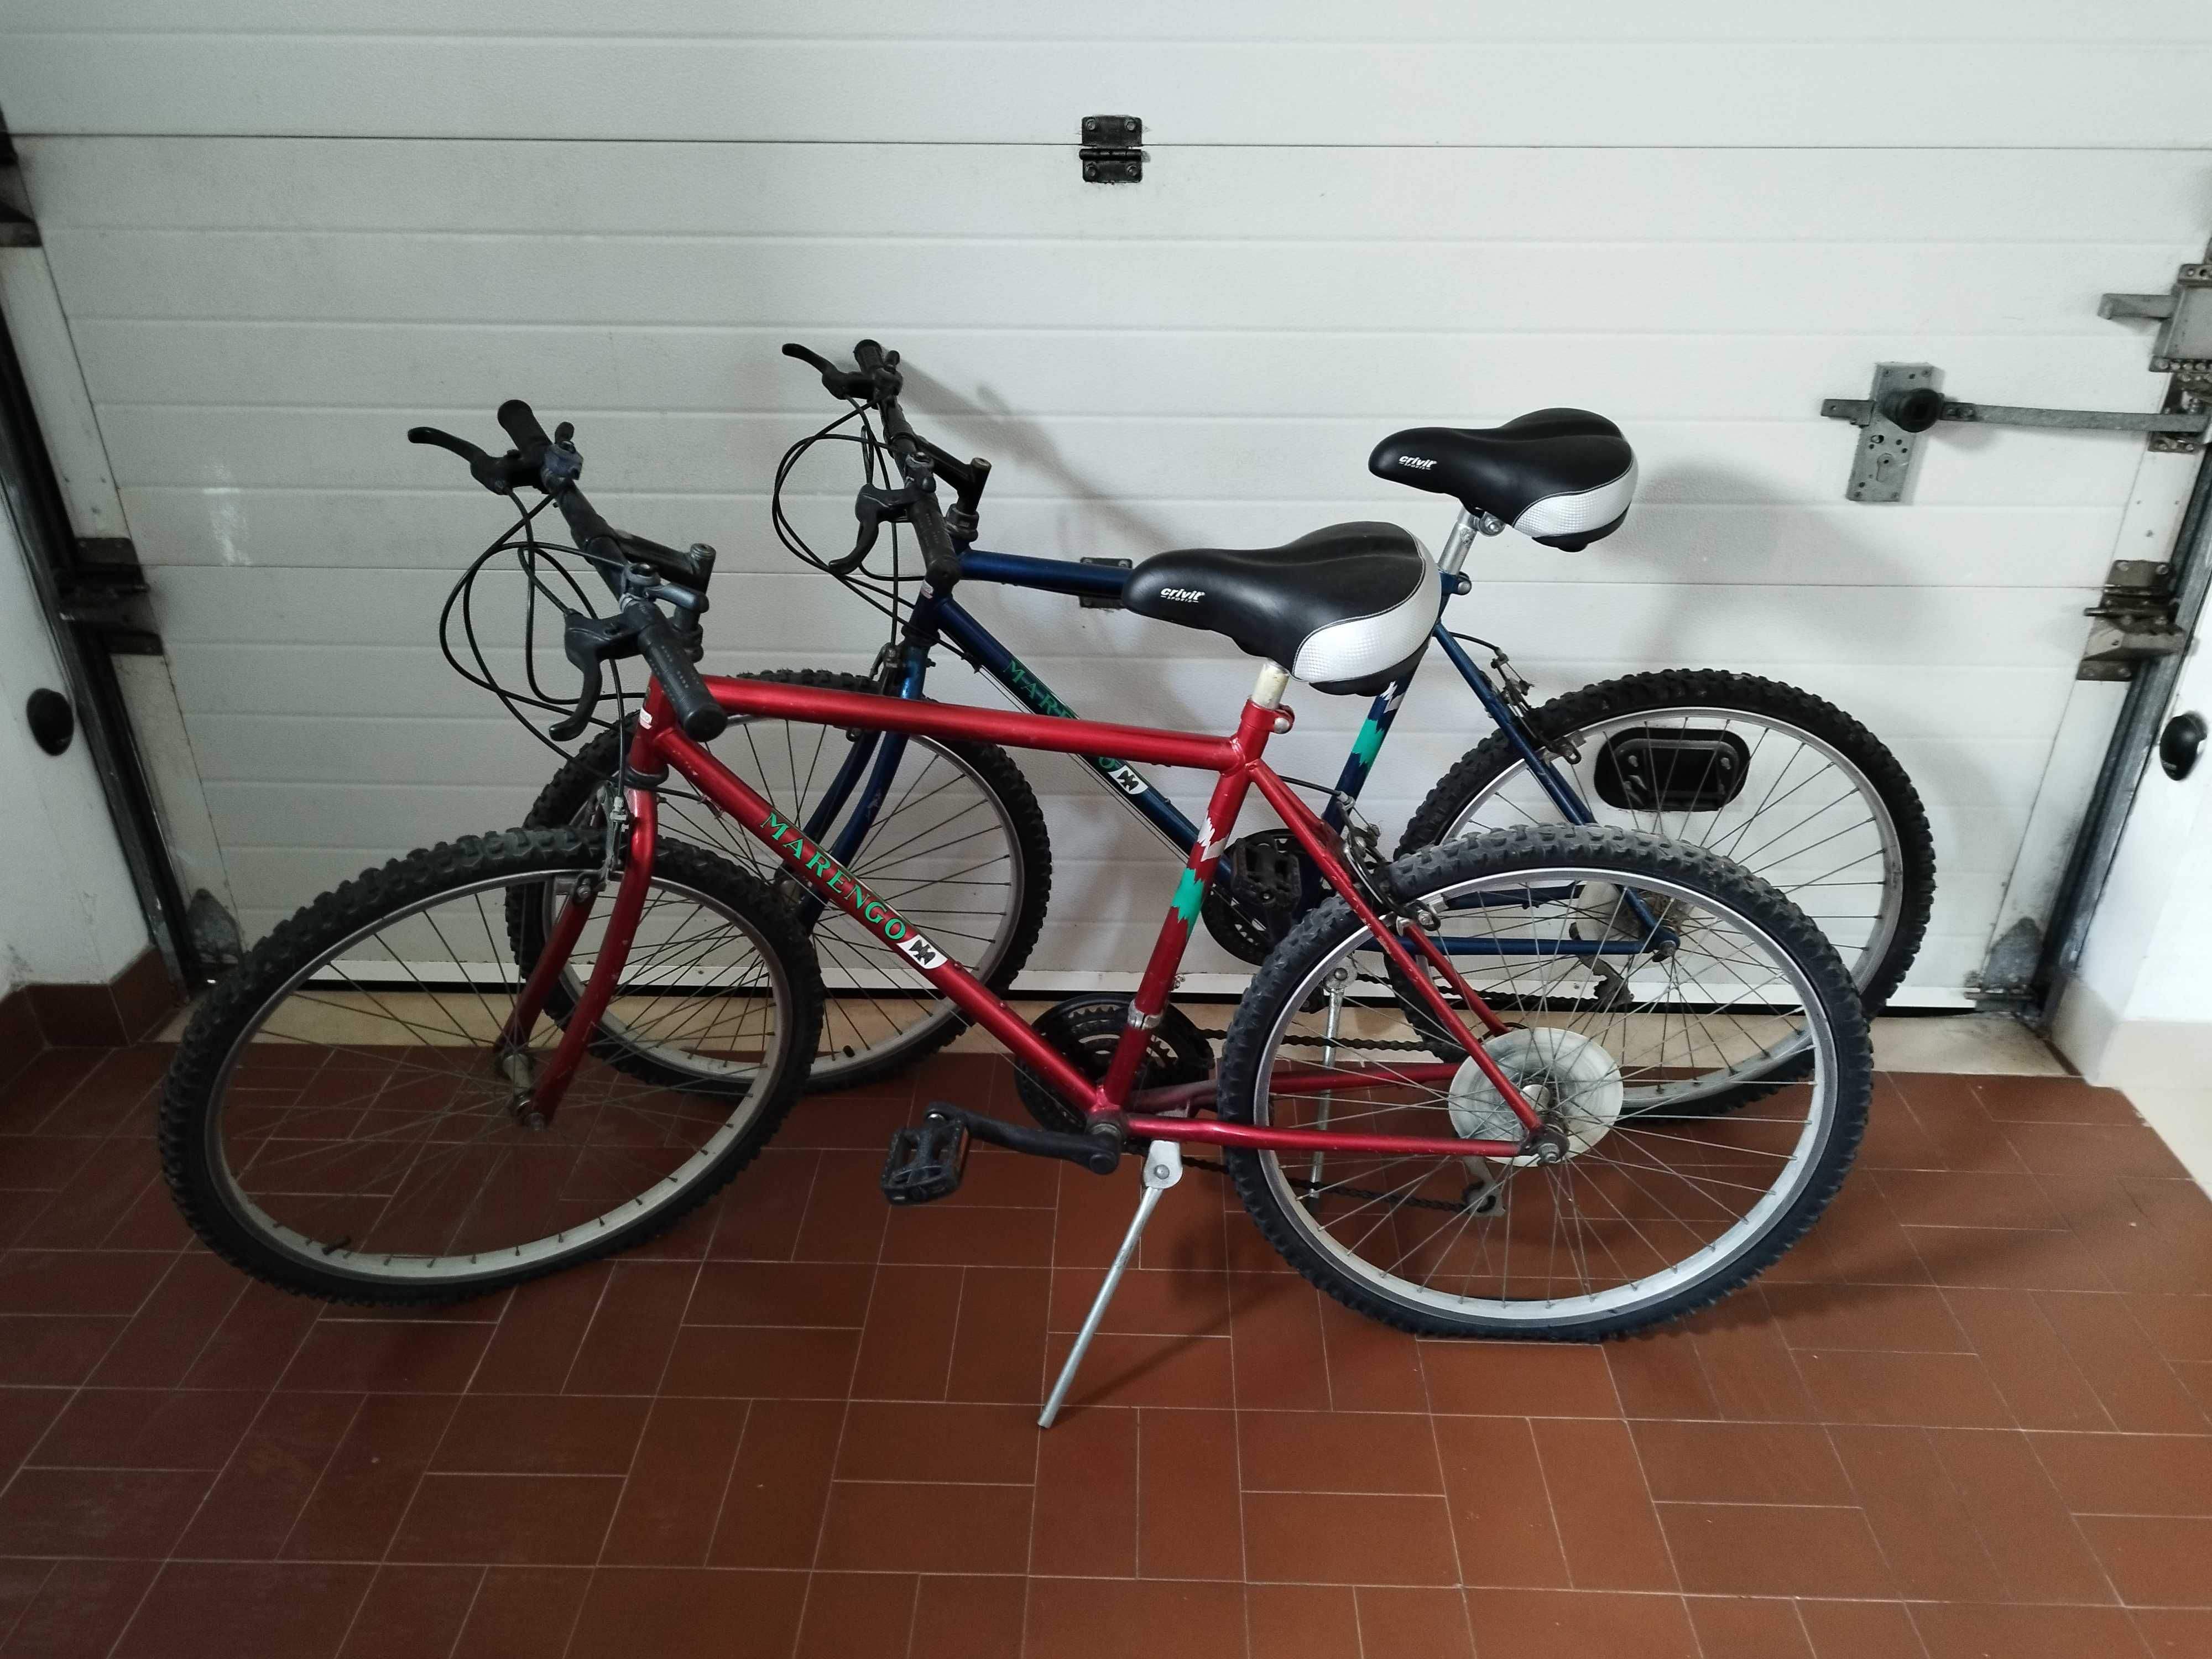 Vendem-se 2 bicicletas usadas em bom estado